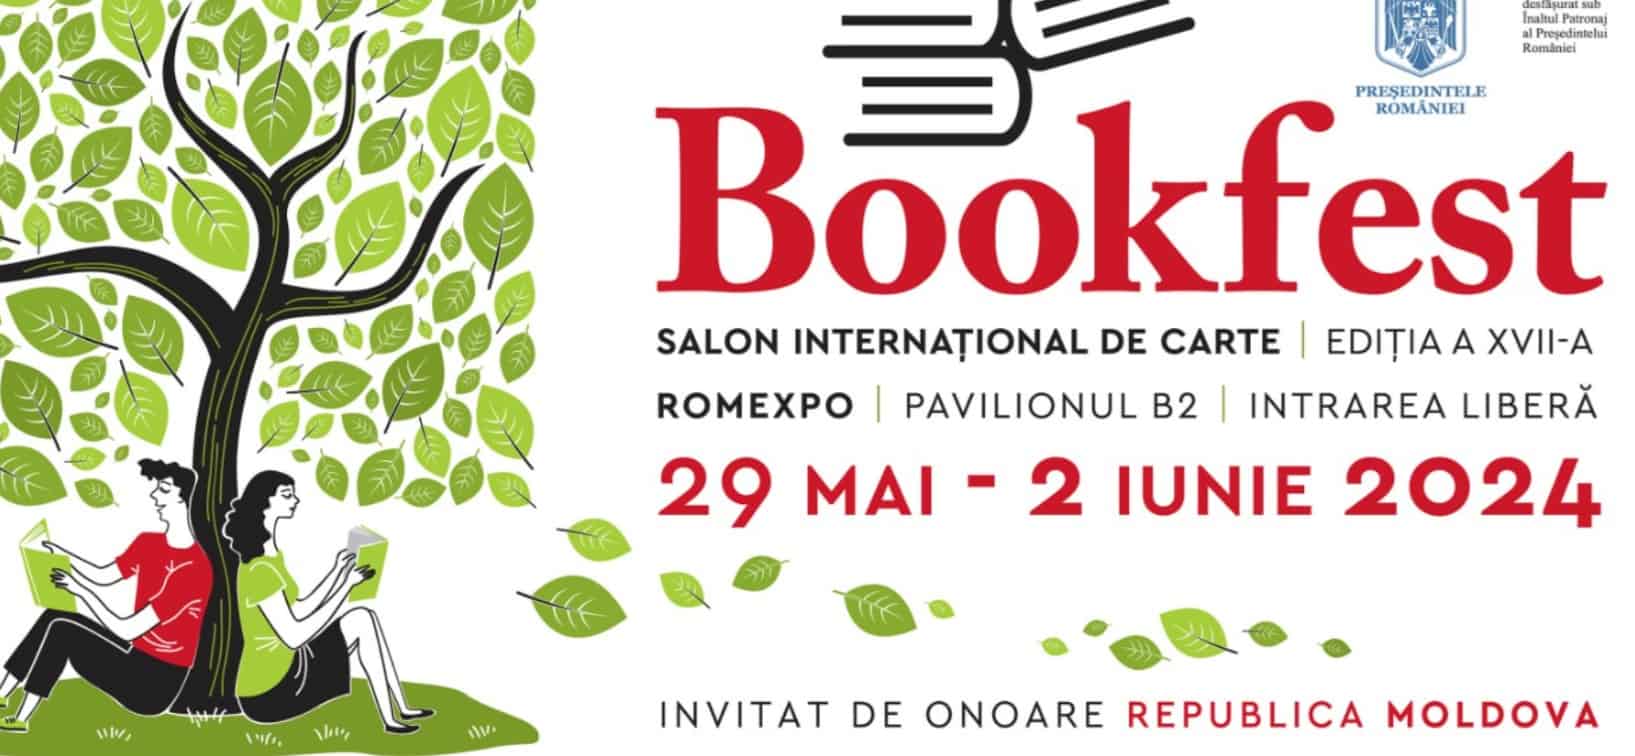 Merită să iubim Bucureștiul: captiala cărților bune la Bookfest. În acest an, evenimentul va găzdui peste 200 de expozanți din toată țara și va avea un invitat de onoare special.